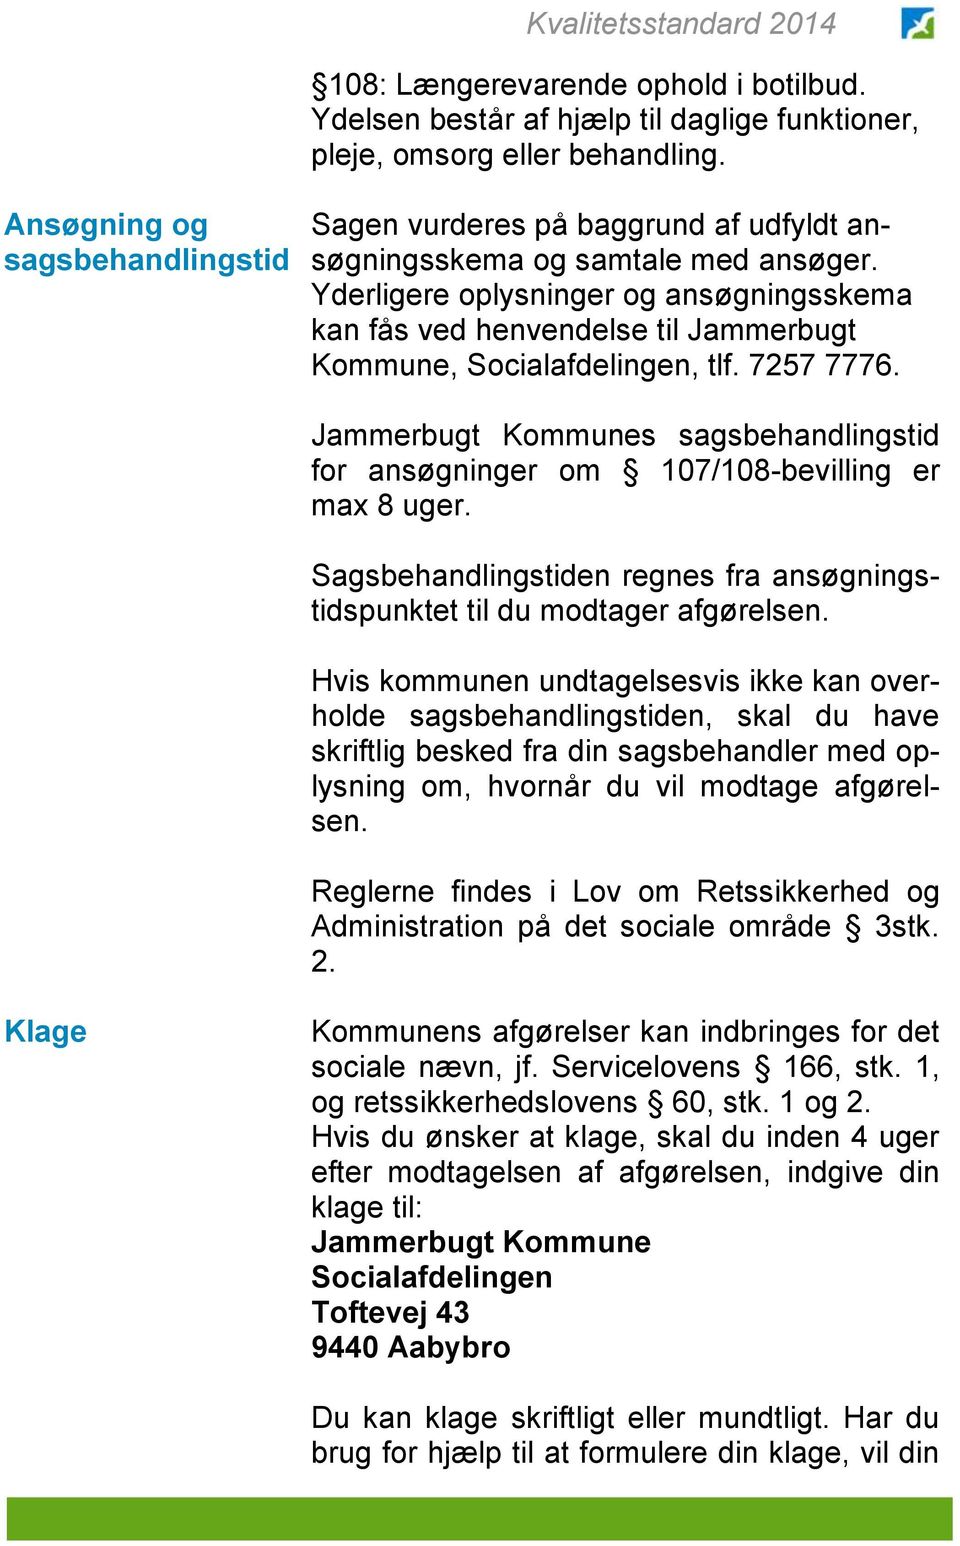 Yderligere oplysninger og ansøgningsskema kan fås ved henvendelse til Jammerbugt Kommune, Socialafdelingen, tlf. 7257 7776.